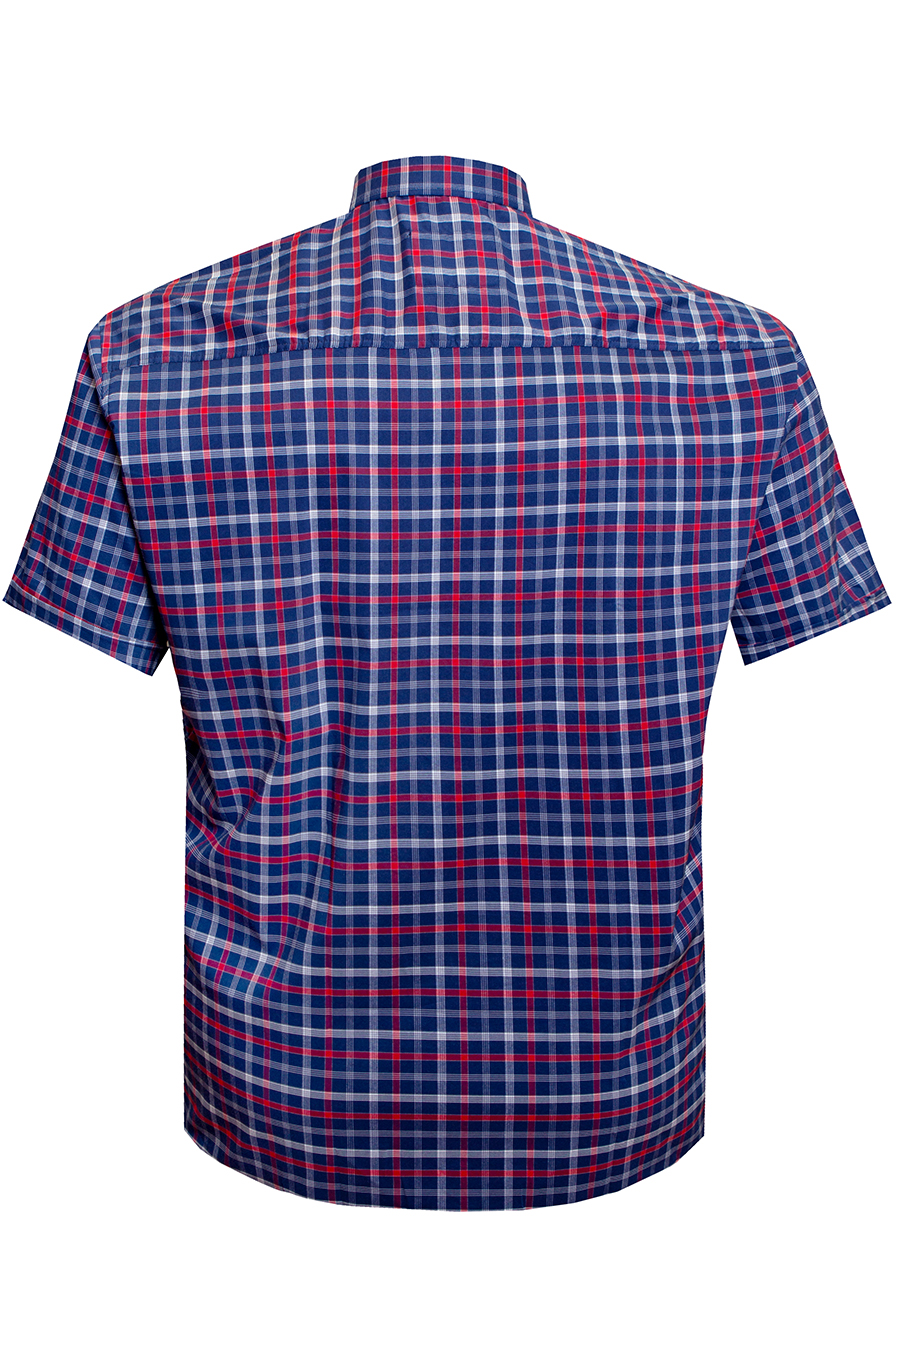 Рубашка Castelli синяя с белой и красной клеткой большого размера